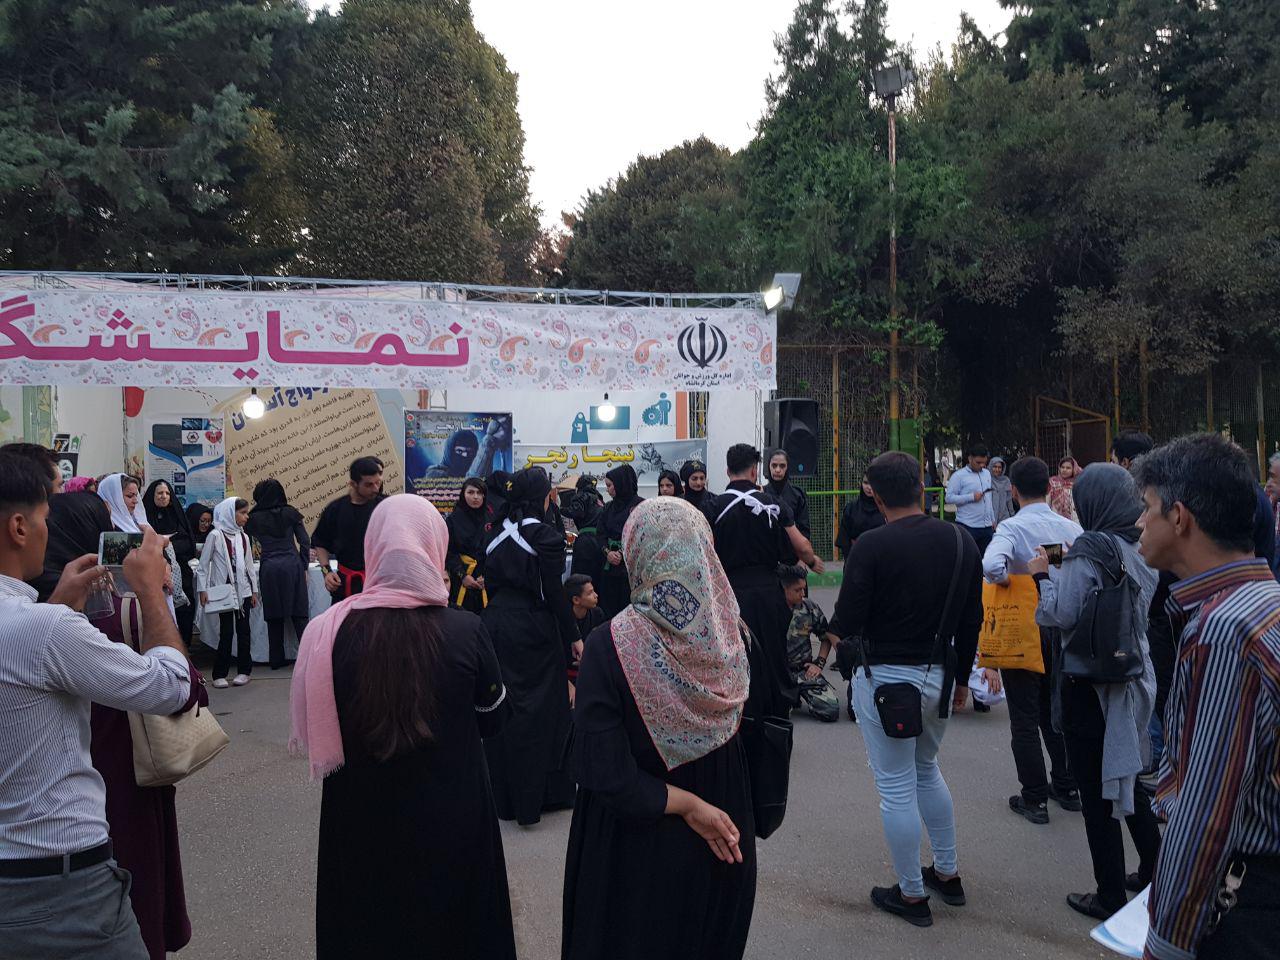 اسم عکاس ندارد -  نمایشگاه جوان و ازدواج آسان در پارک معلم کرمانشاه